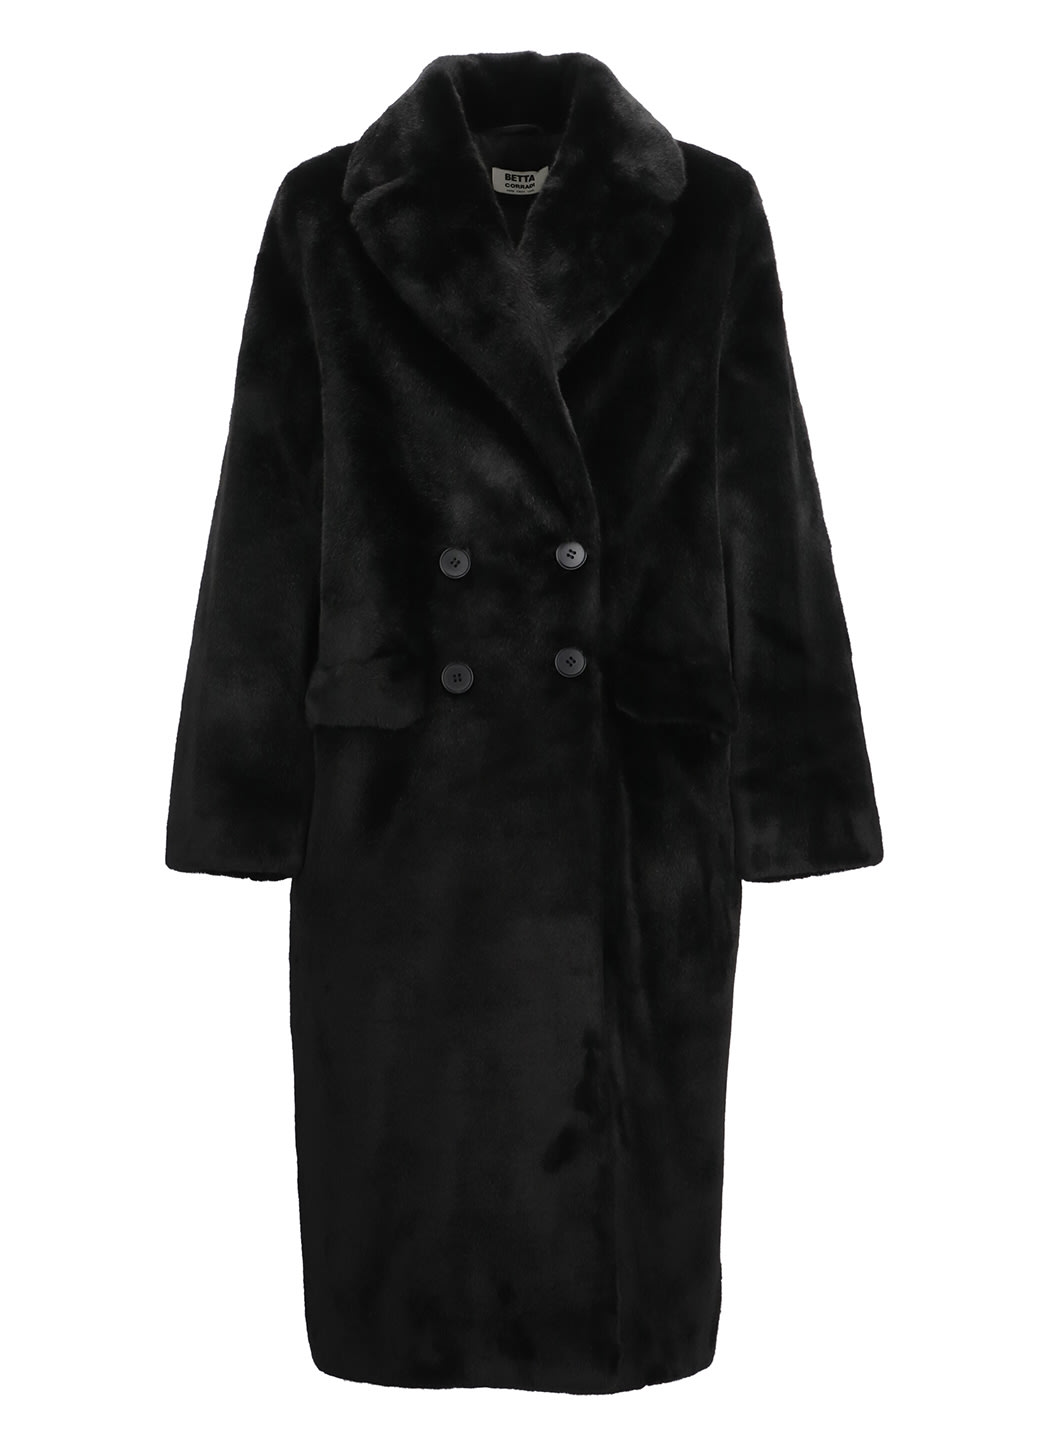 Betta Corradi Eco-fur Double-breasted Coat